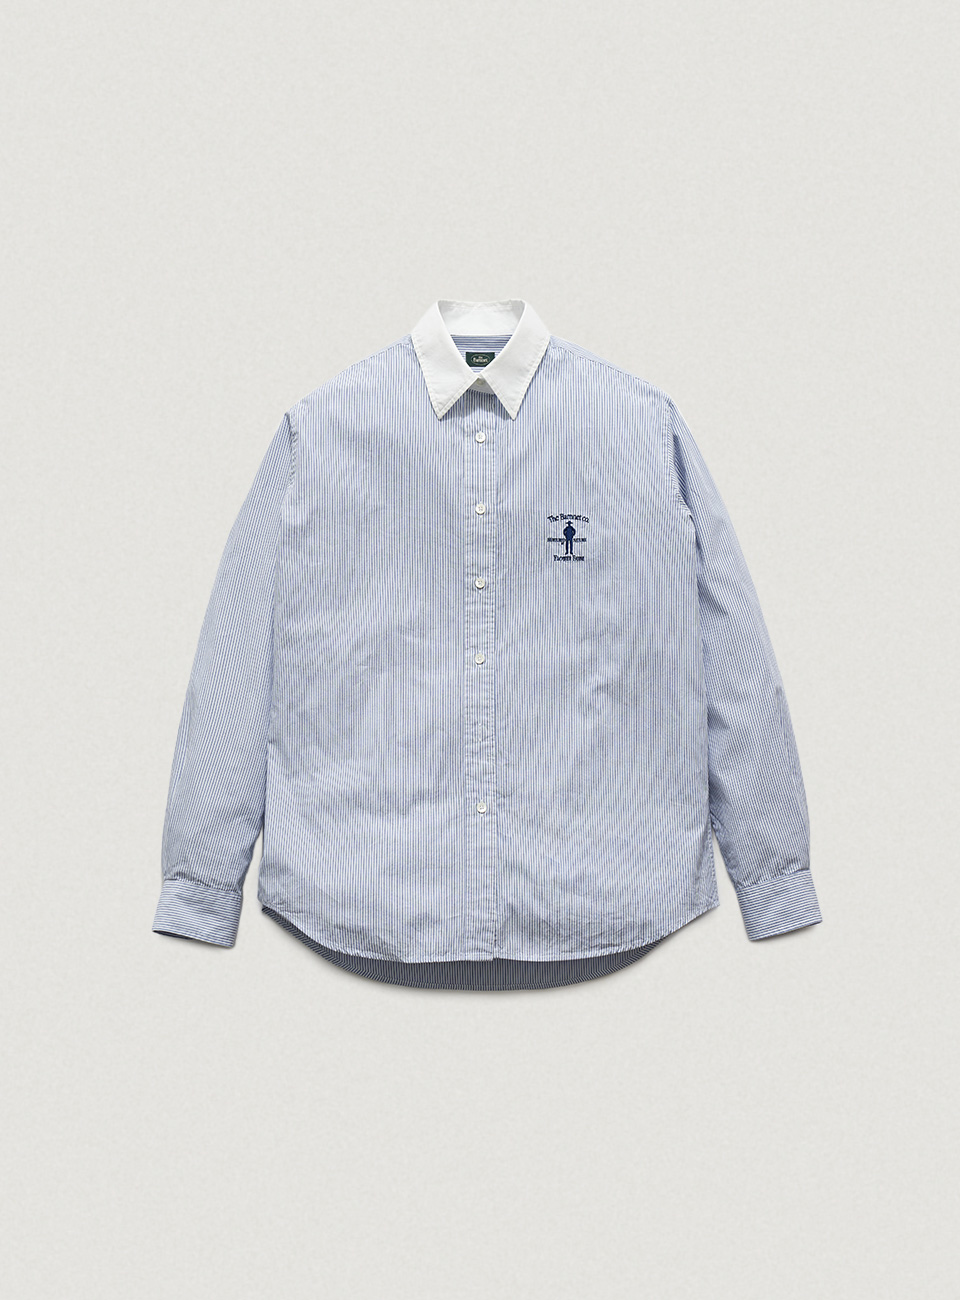 Blue Striped Flower Farm Uniform Shirt by SUNWELL[6월 중순 순차 배송]